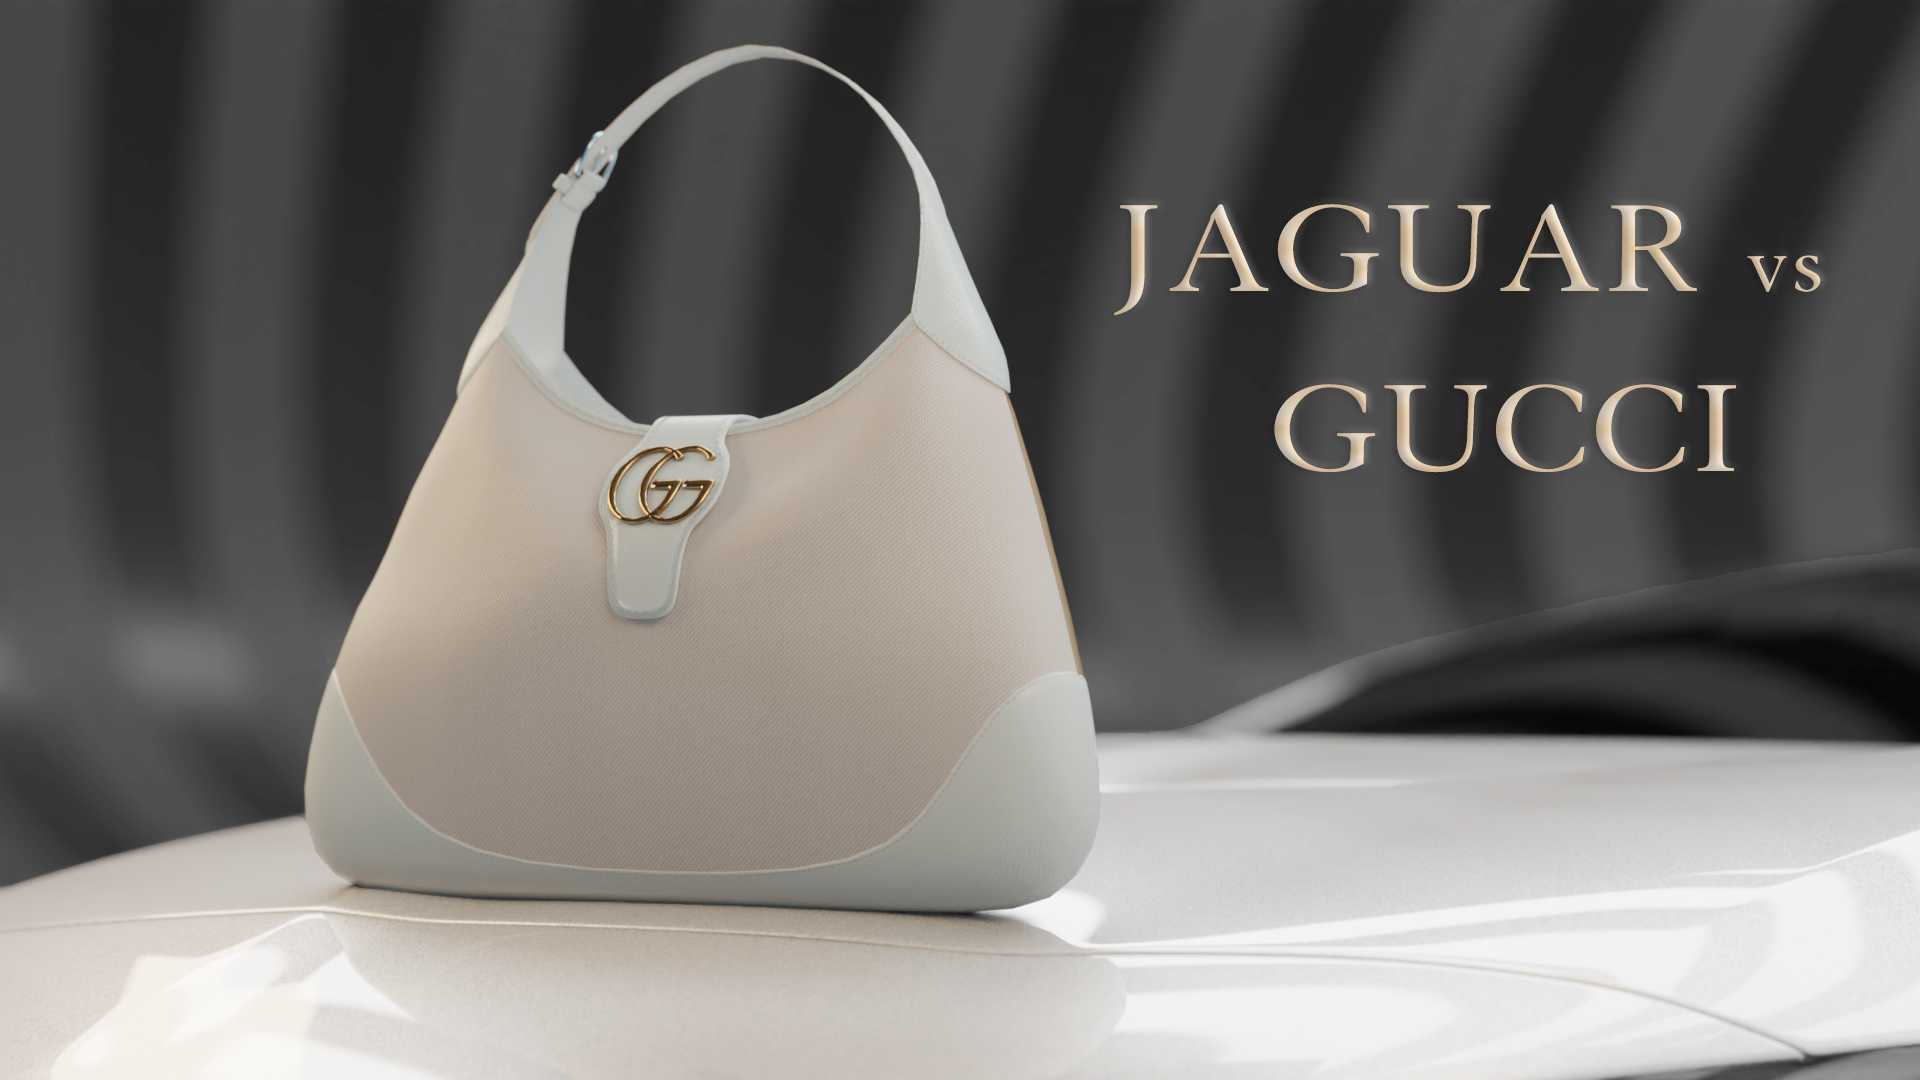 Jaguar vs Gucci